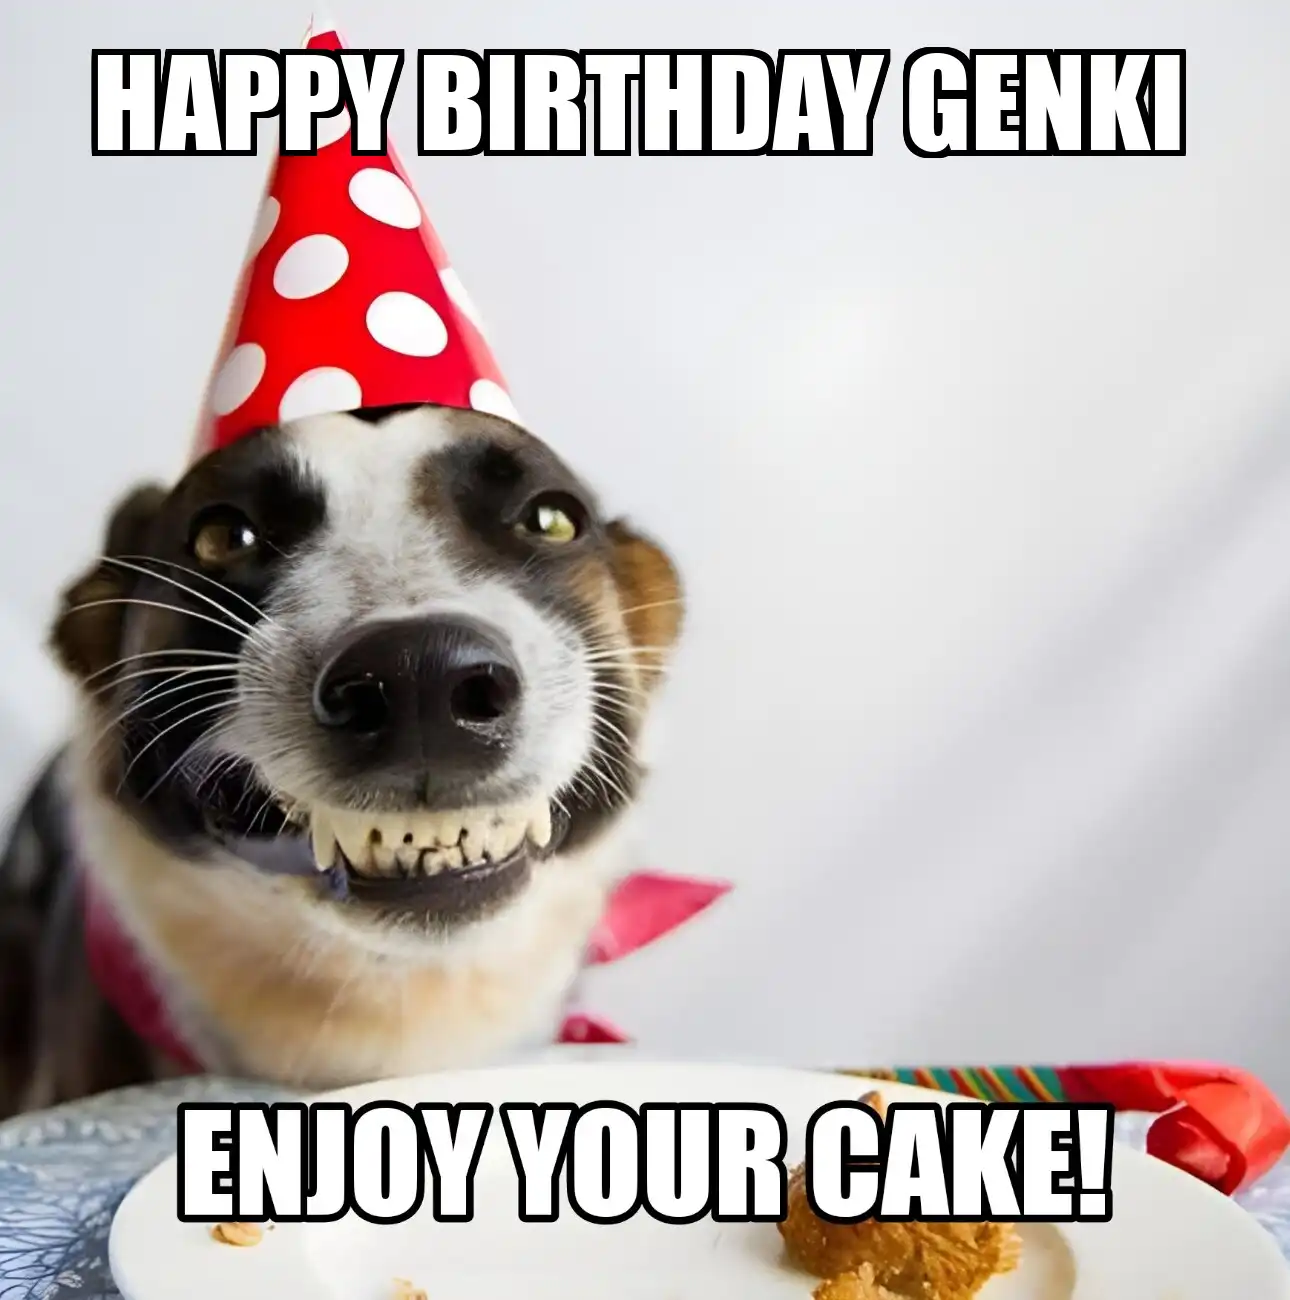 Happy Birthday Genki Enjoy Your Cake Dog Meme